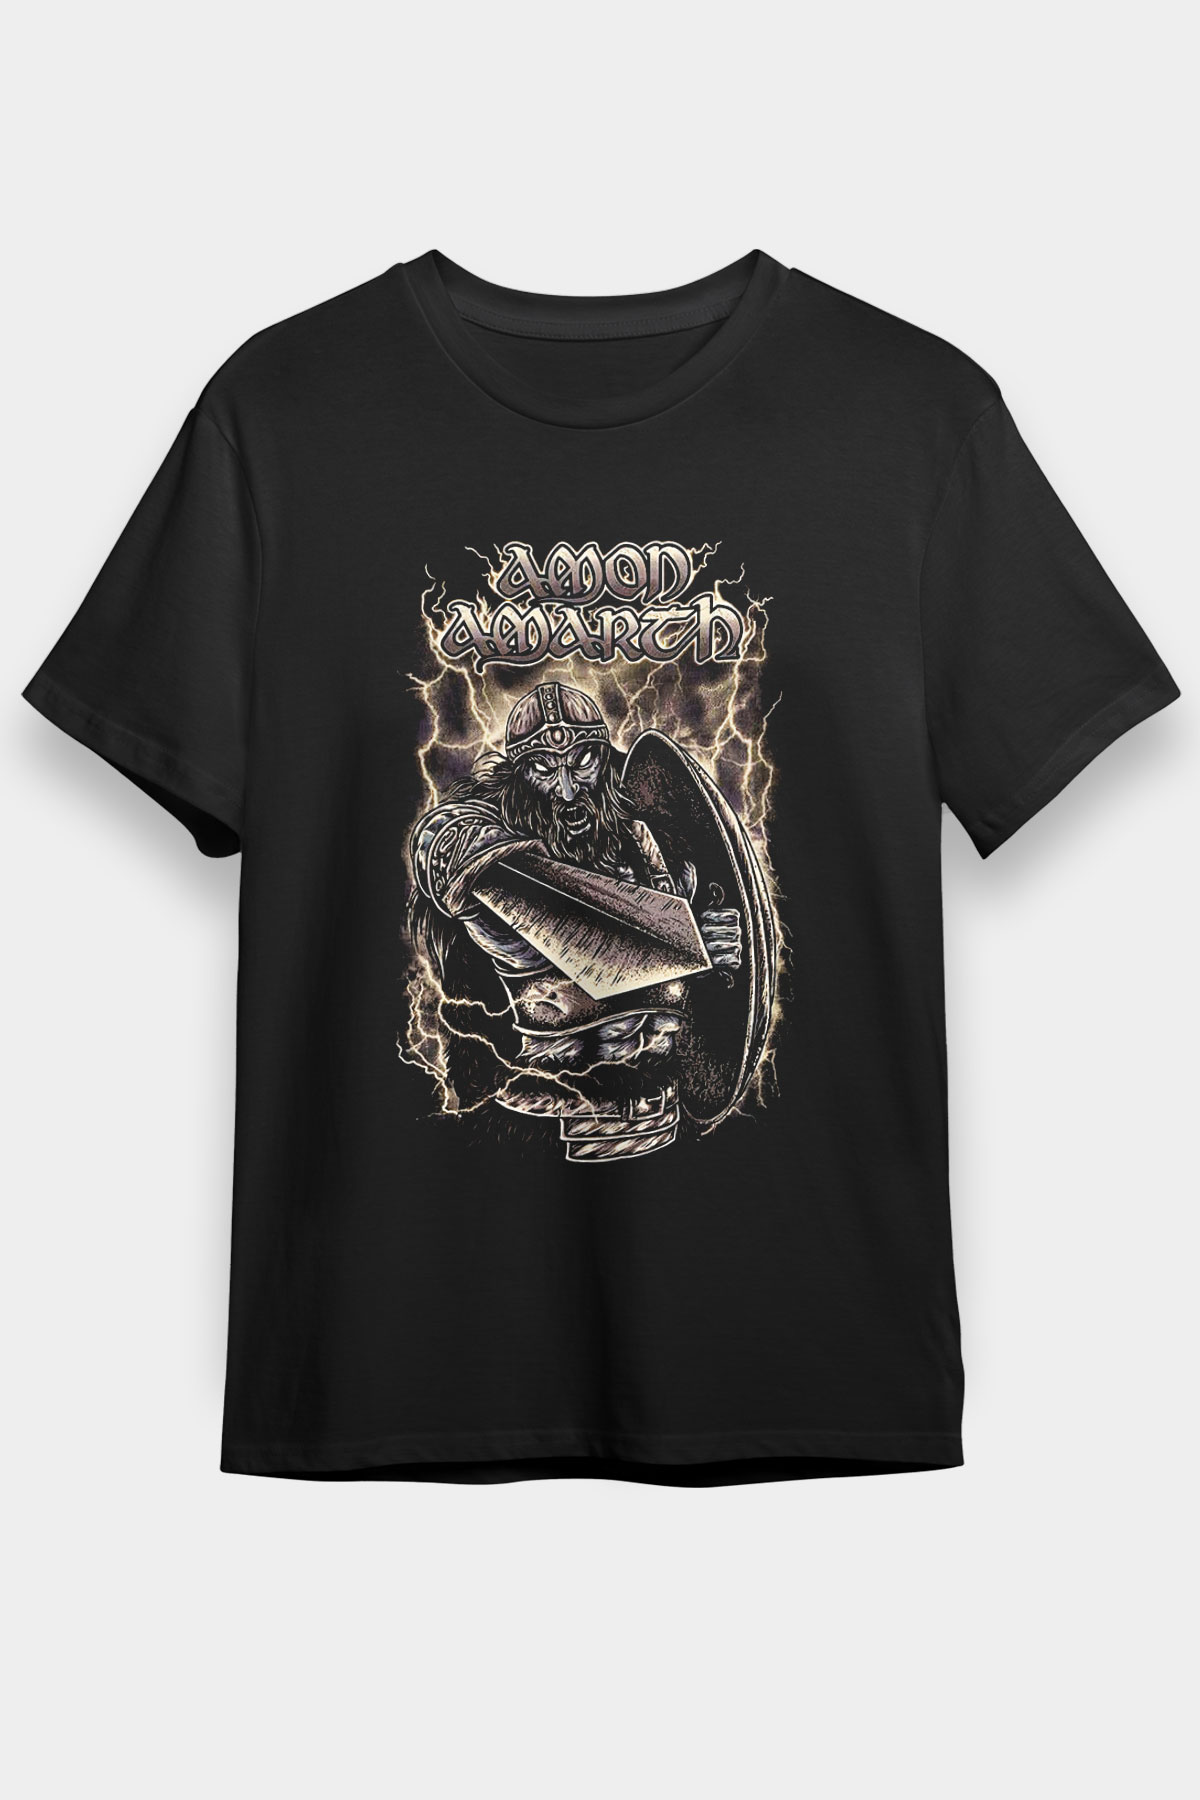 Amon Amarth ,Music Band ,Unisex Tshirt 16